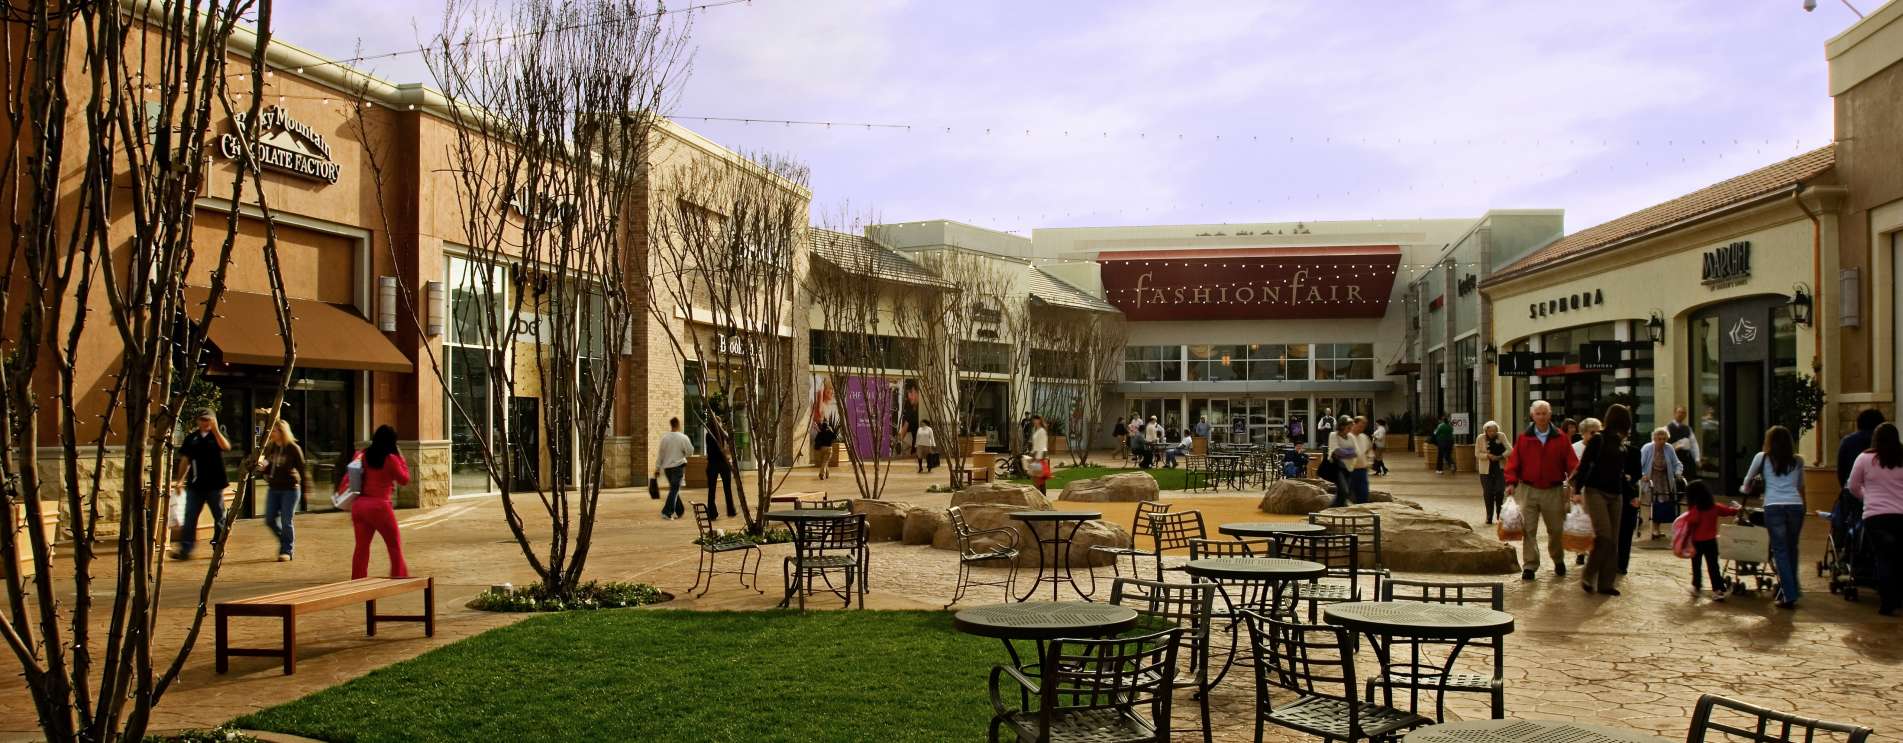 Fashion Fair Mall   Shopping in Fresno